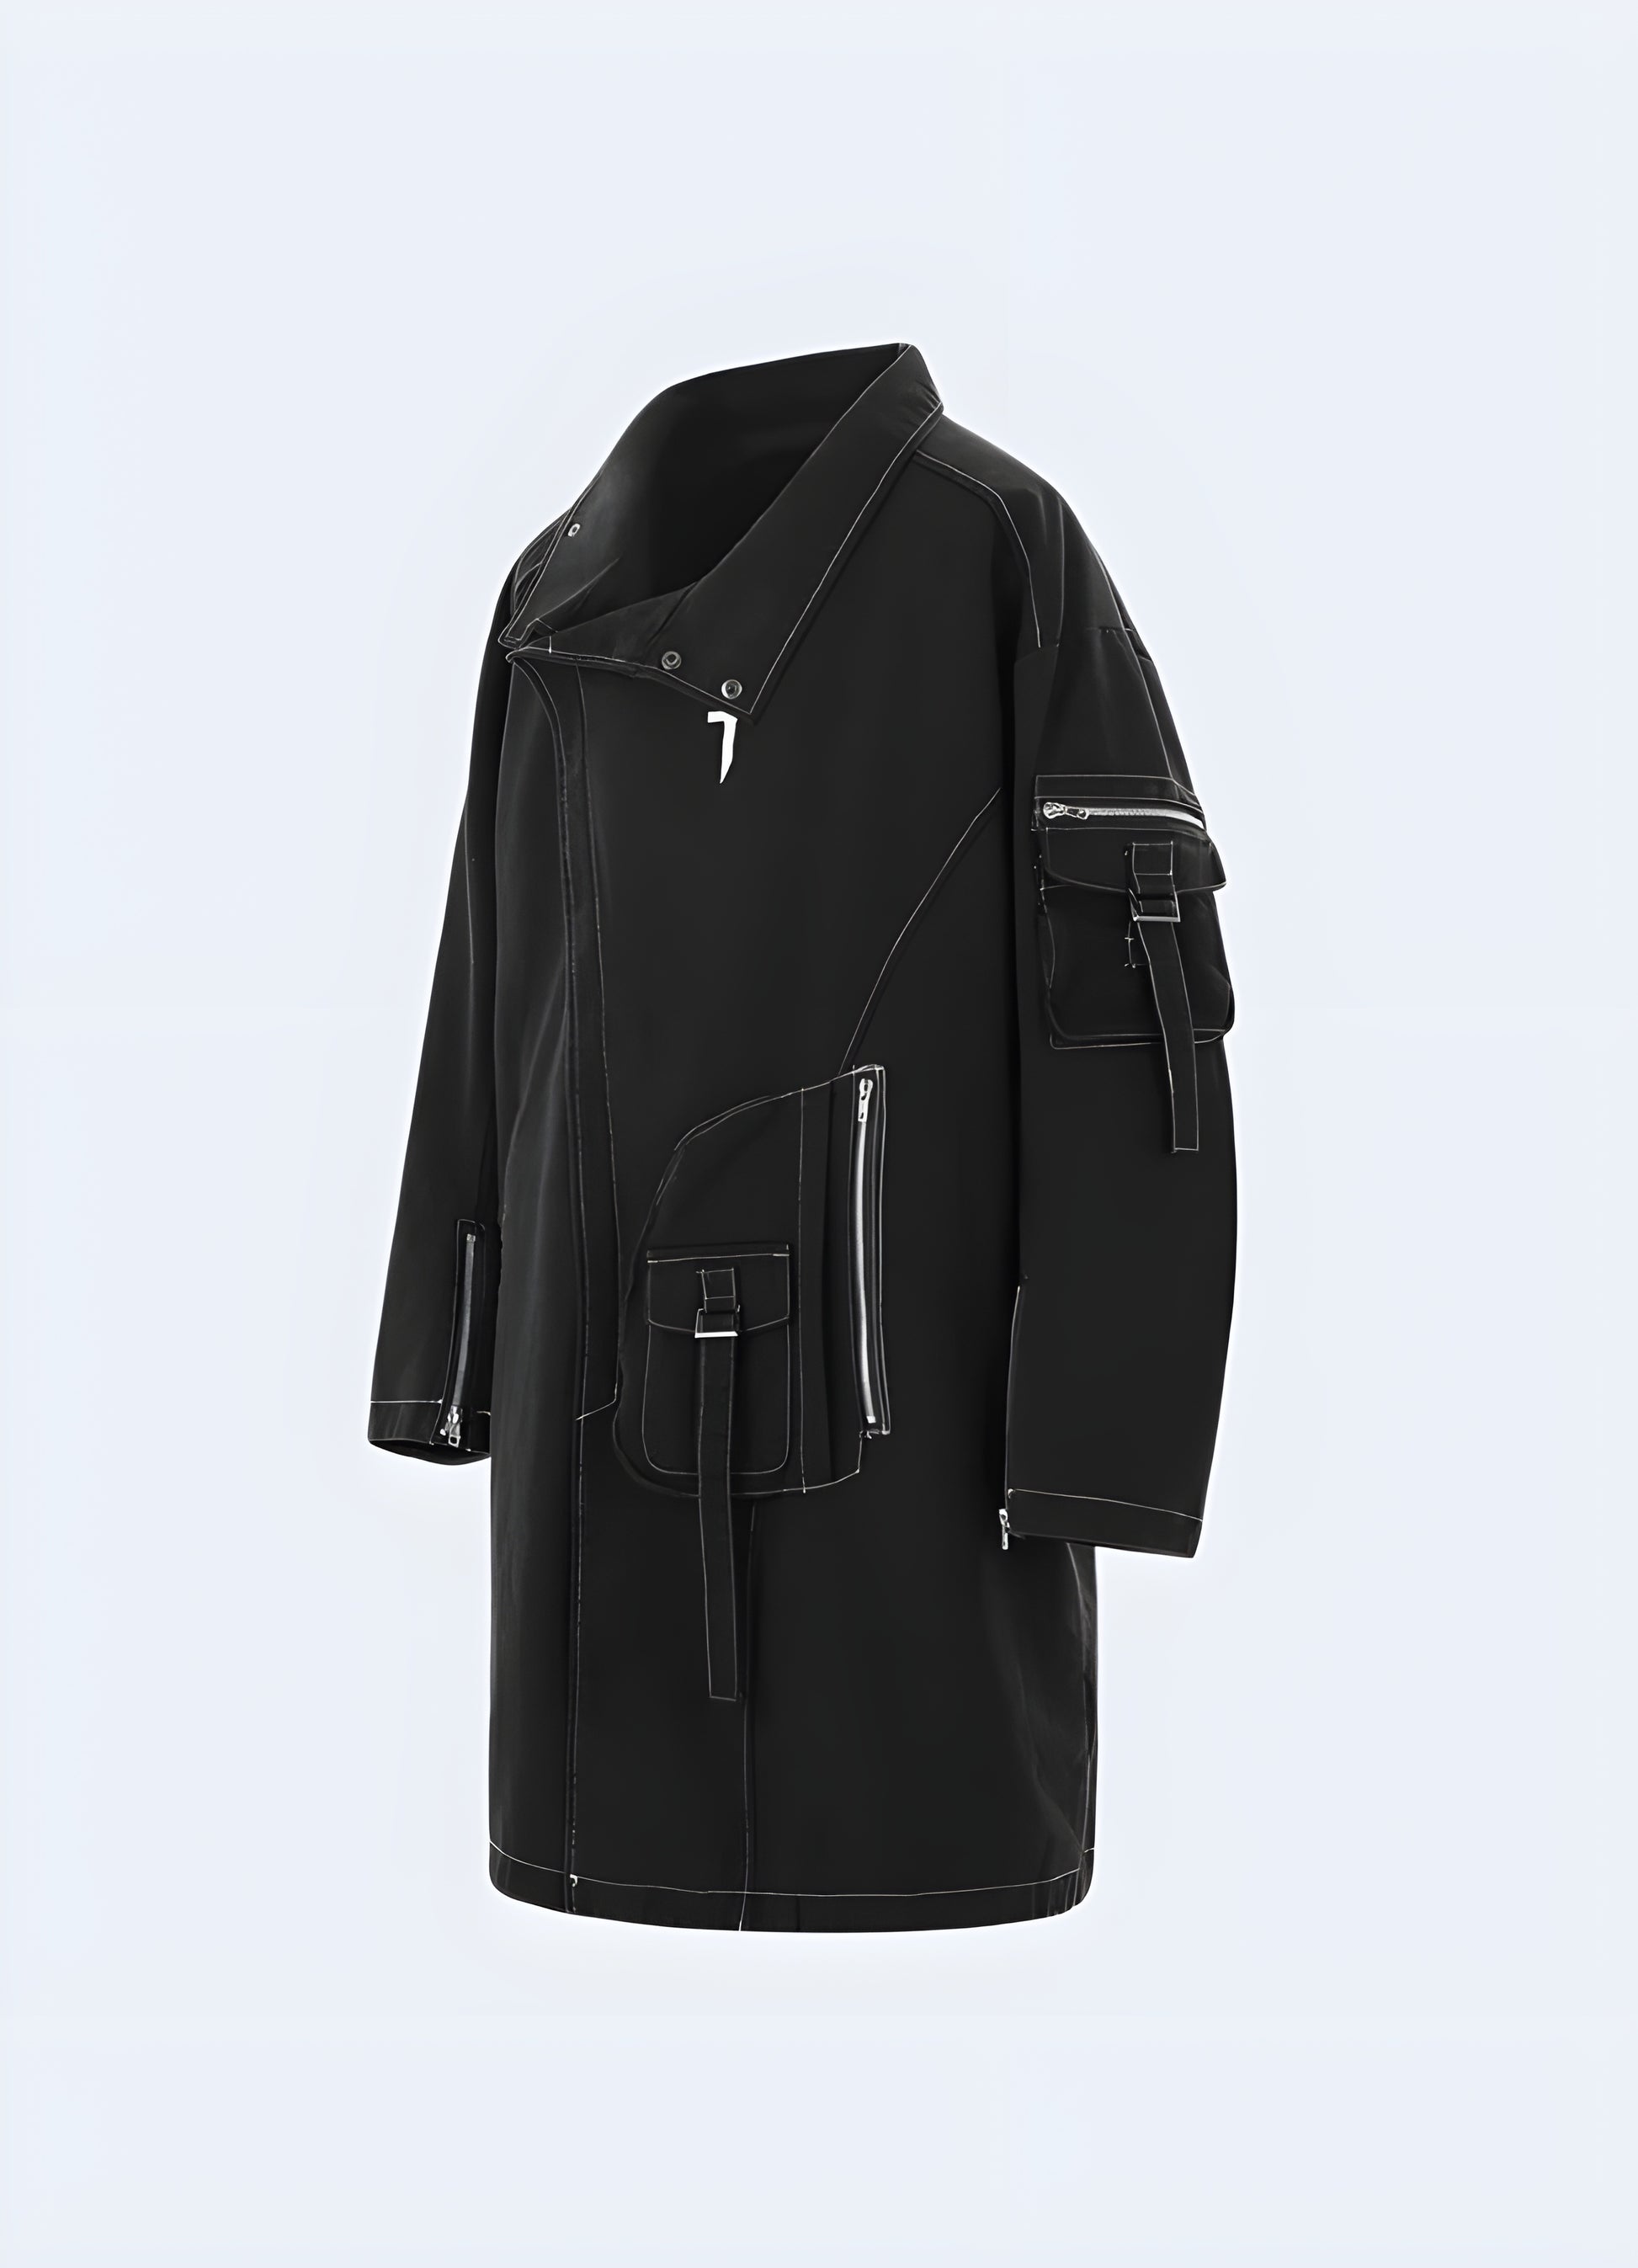 This black hoodie jacket is designed hooded zip-up utility jacket.